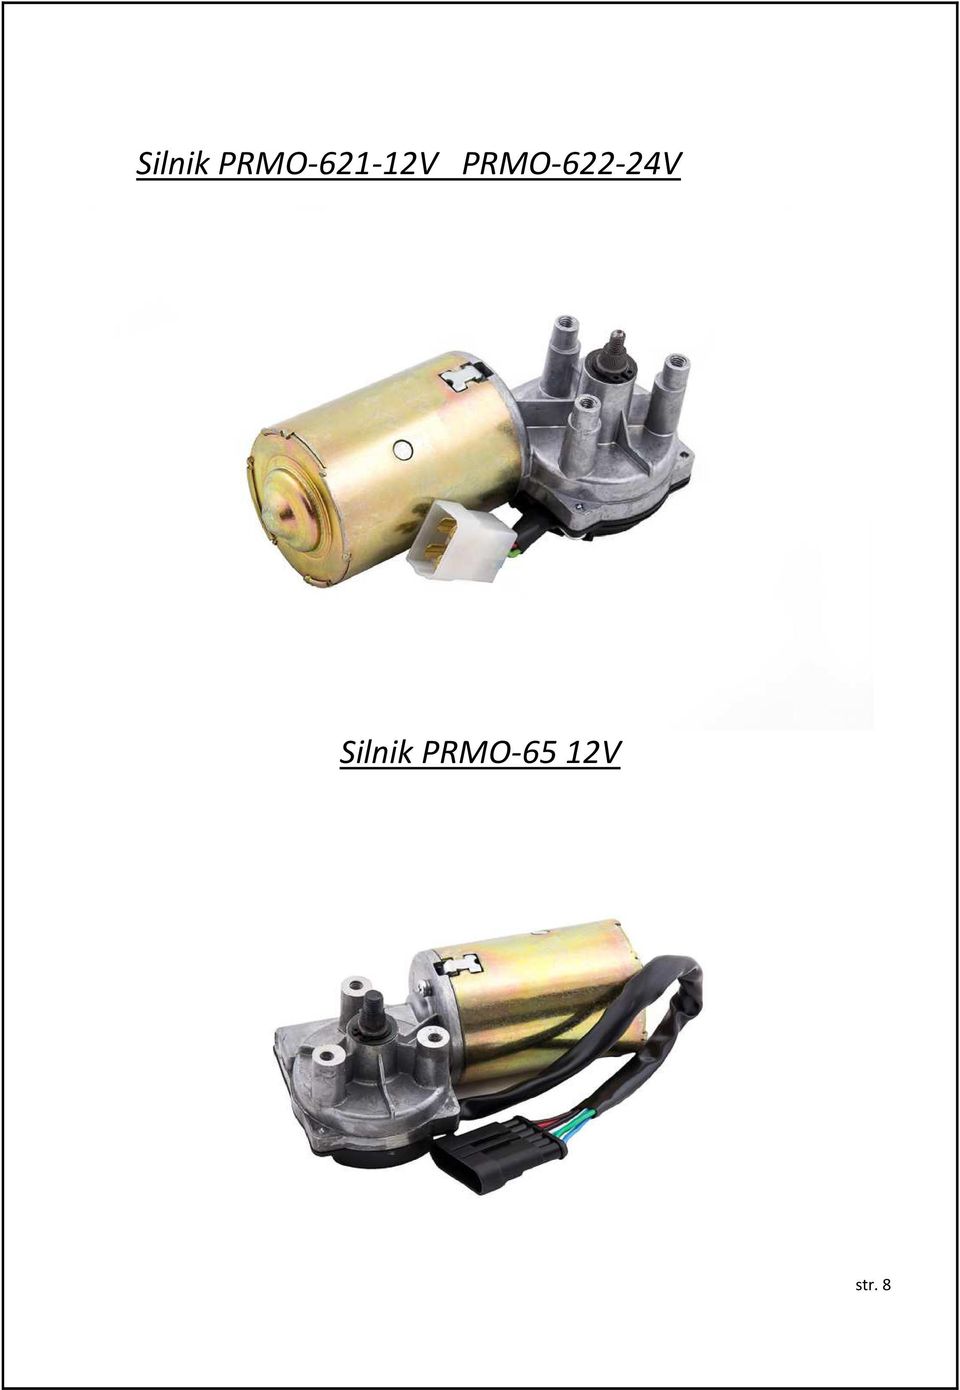 PRMO-622-24V 